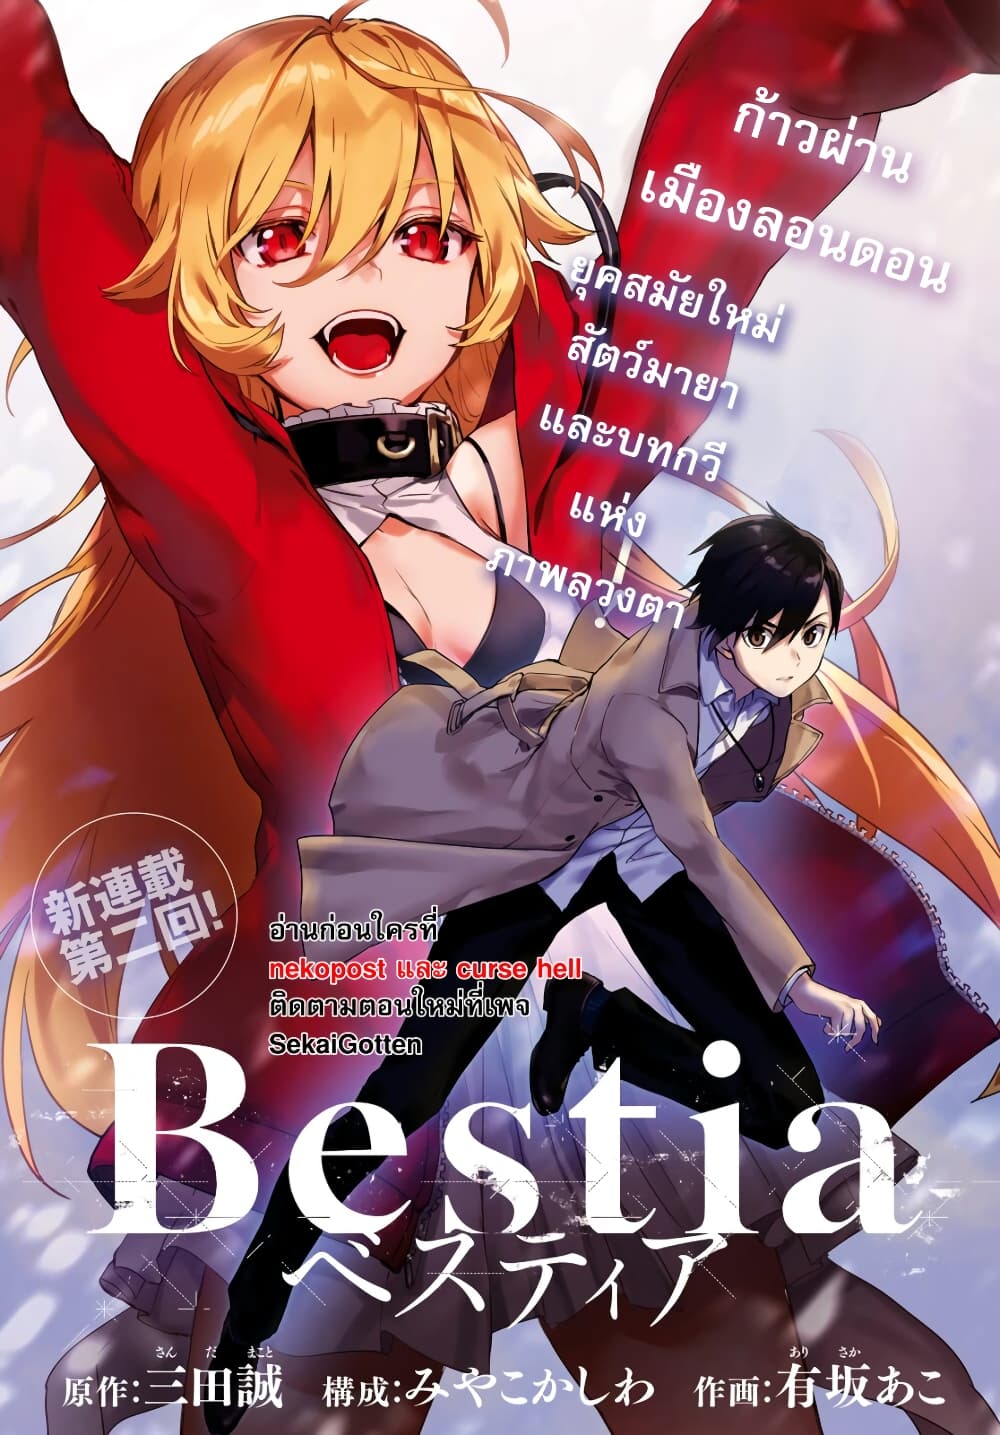 Bestia 2-Who killed Beasts?